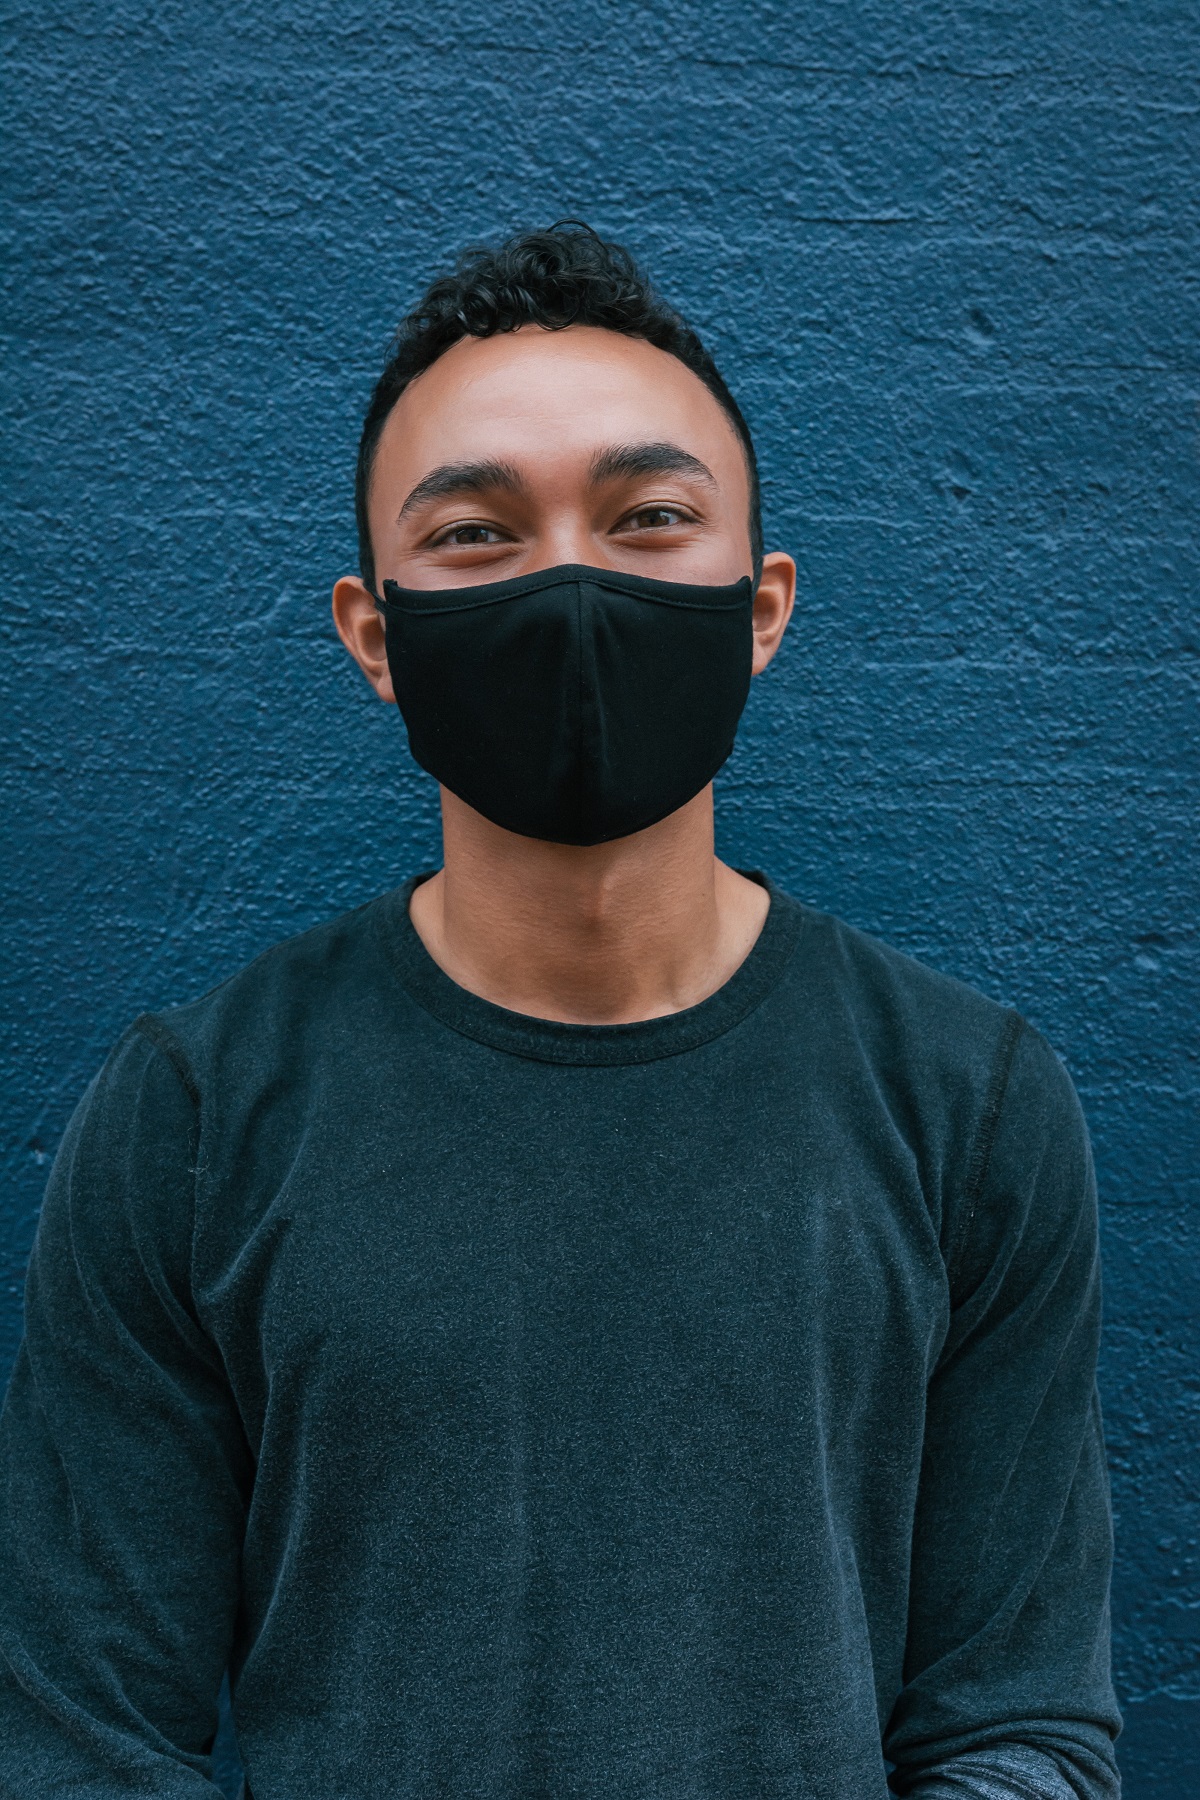 man wearing black face mask